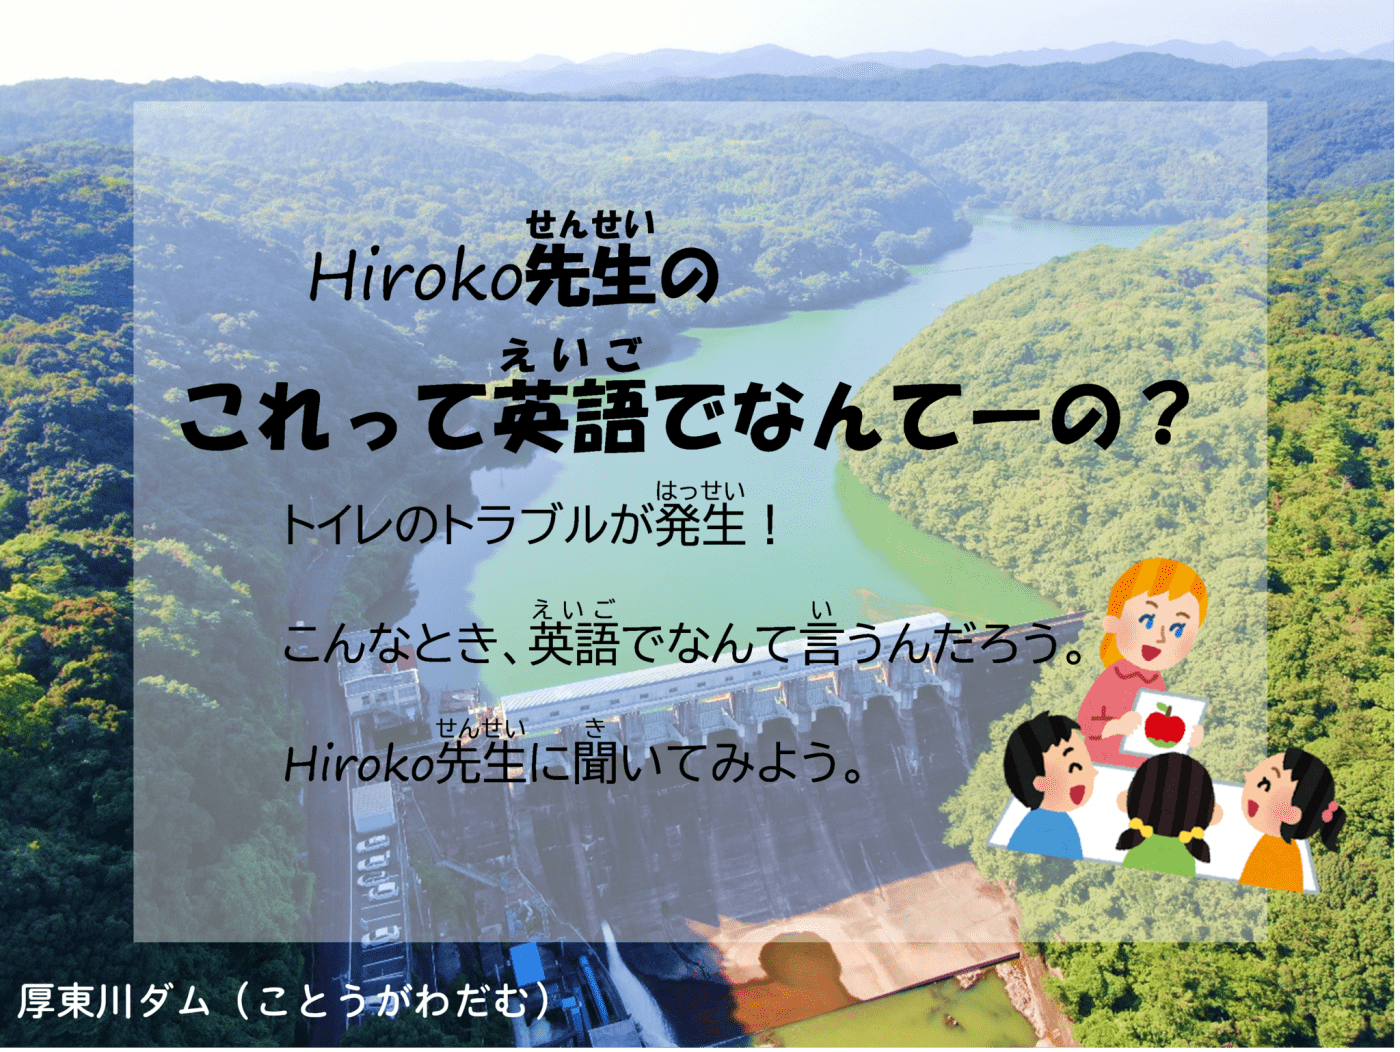 Hiroko先生のこれって英語でなんてーの？　トイレのトラブルが発生！こんなとき、英語でなんて言うんだろう。Hiroko先生に聞いてみよう。